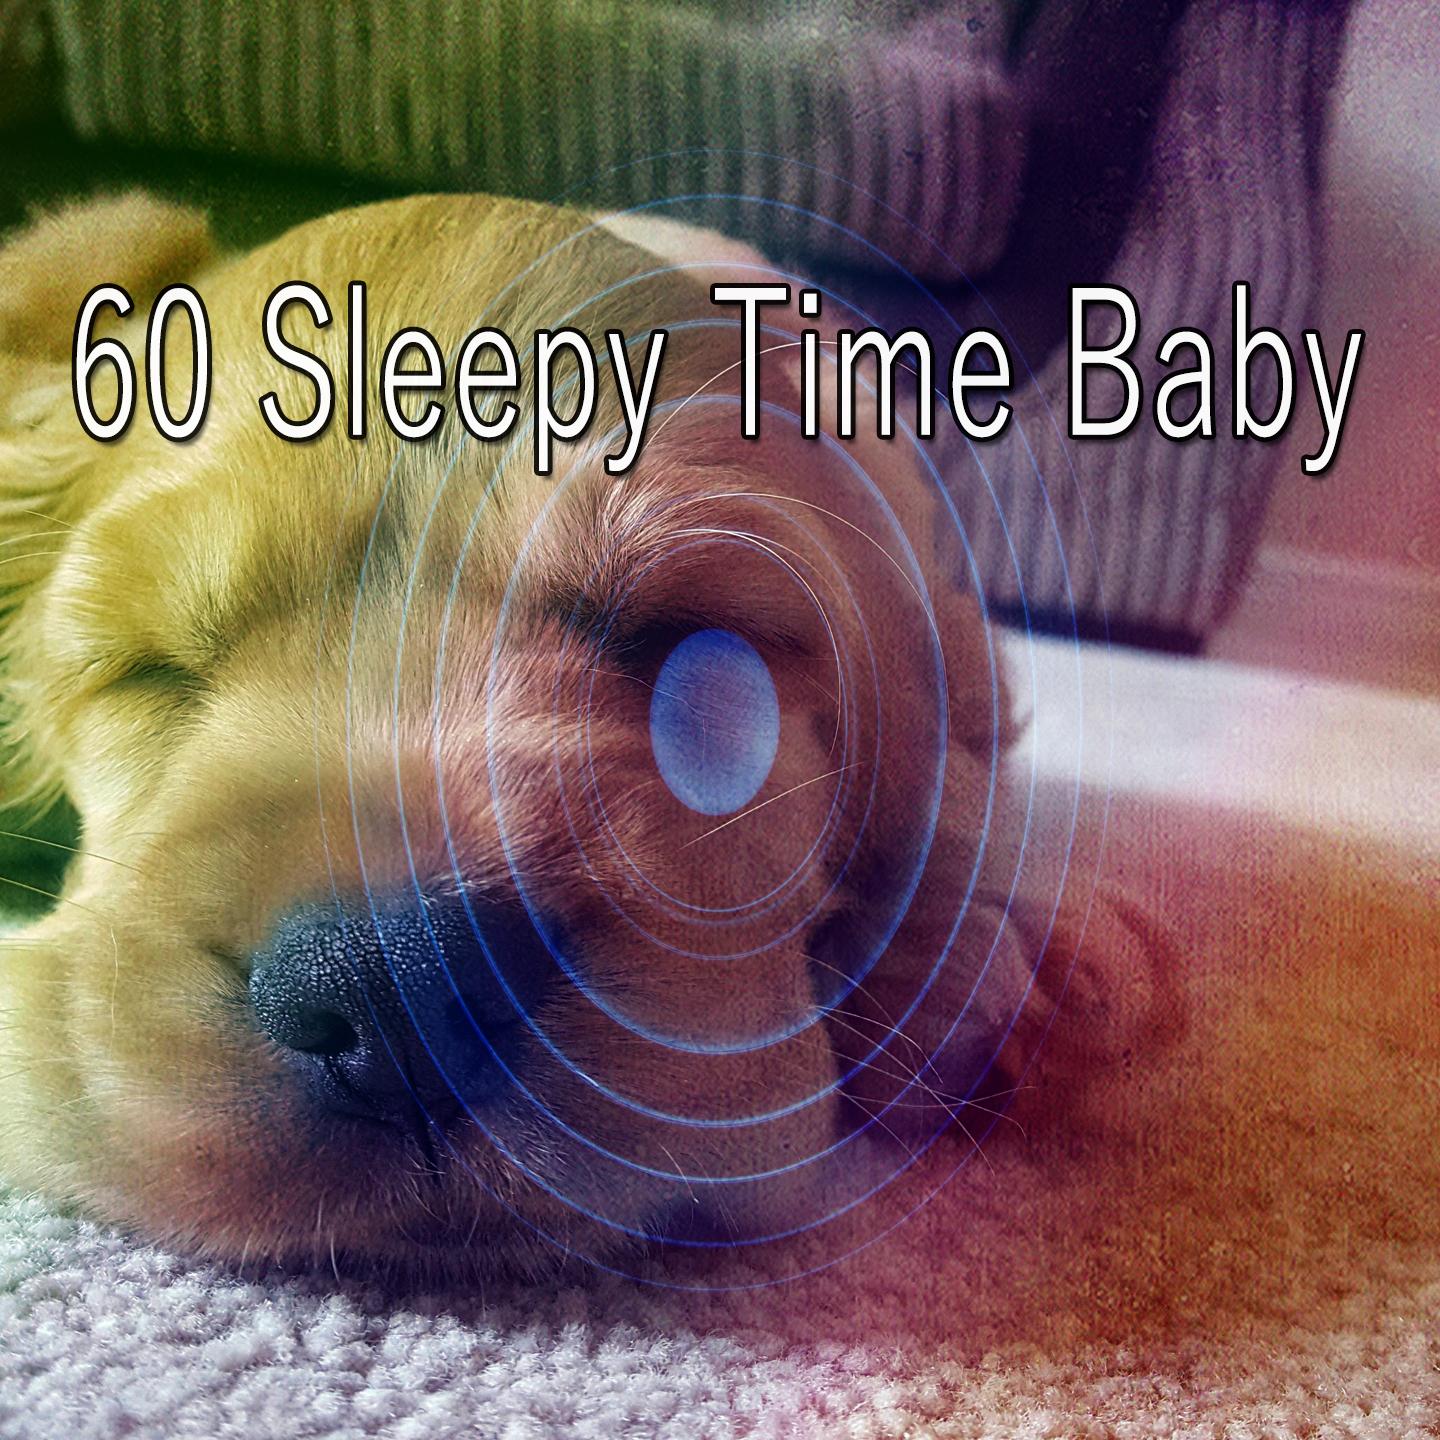 60 Sleepy Time Baby